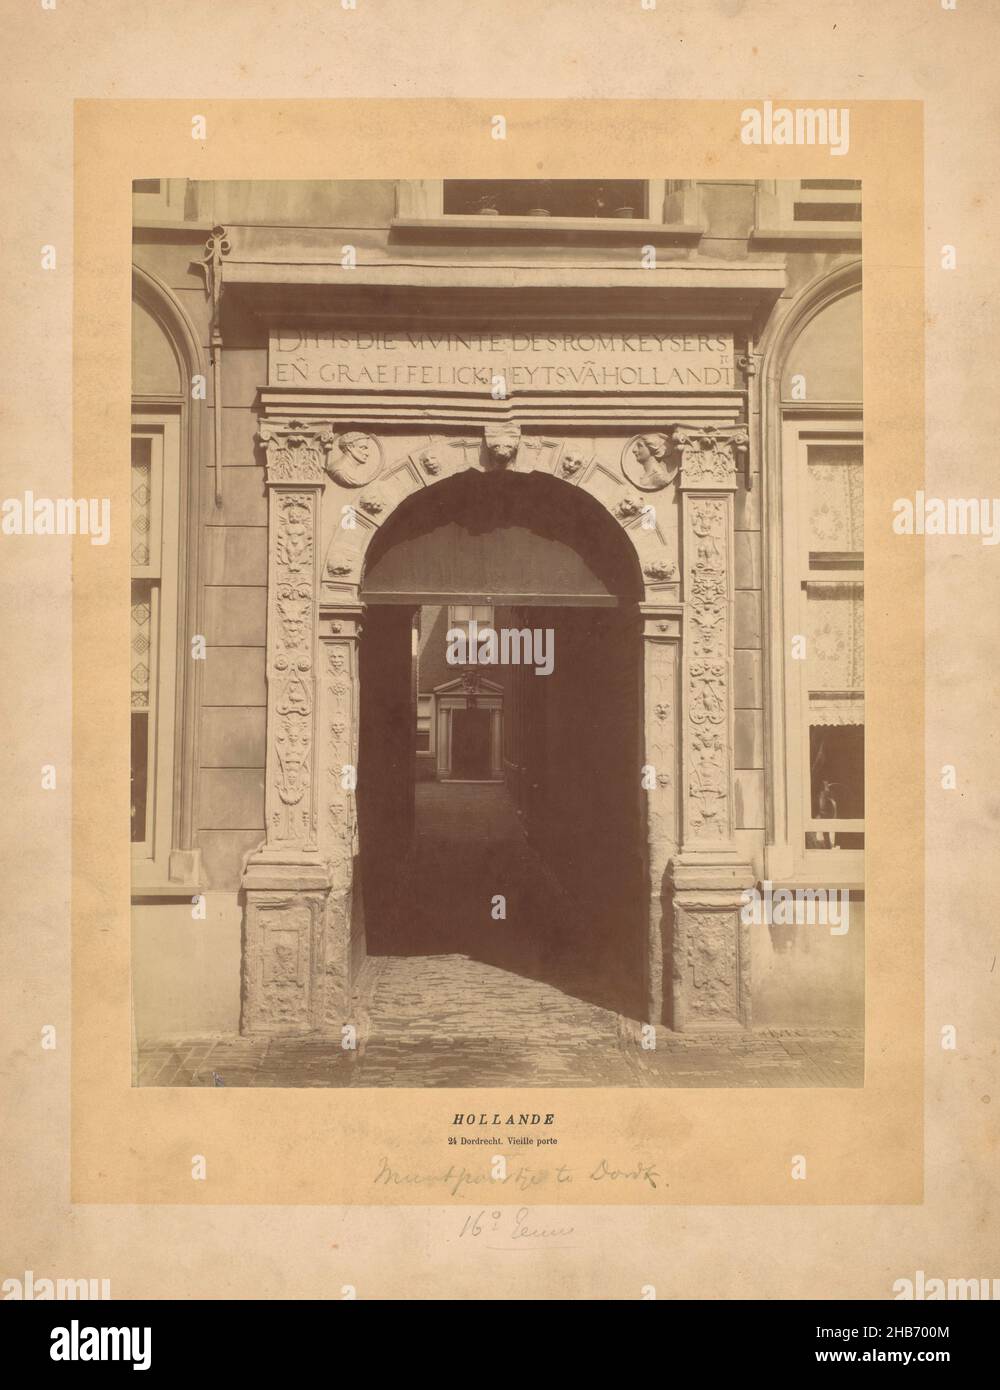 MiNT Gate à Dordrecht, anonyme, Dordrecht, c.1875 - c.1900, carton, imprimé albumine, hauteur 280 mm × largeur 227 mm Banque D'Images